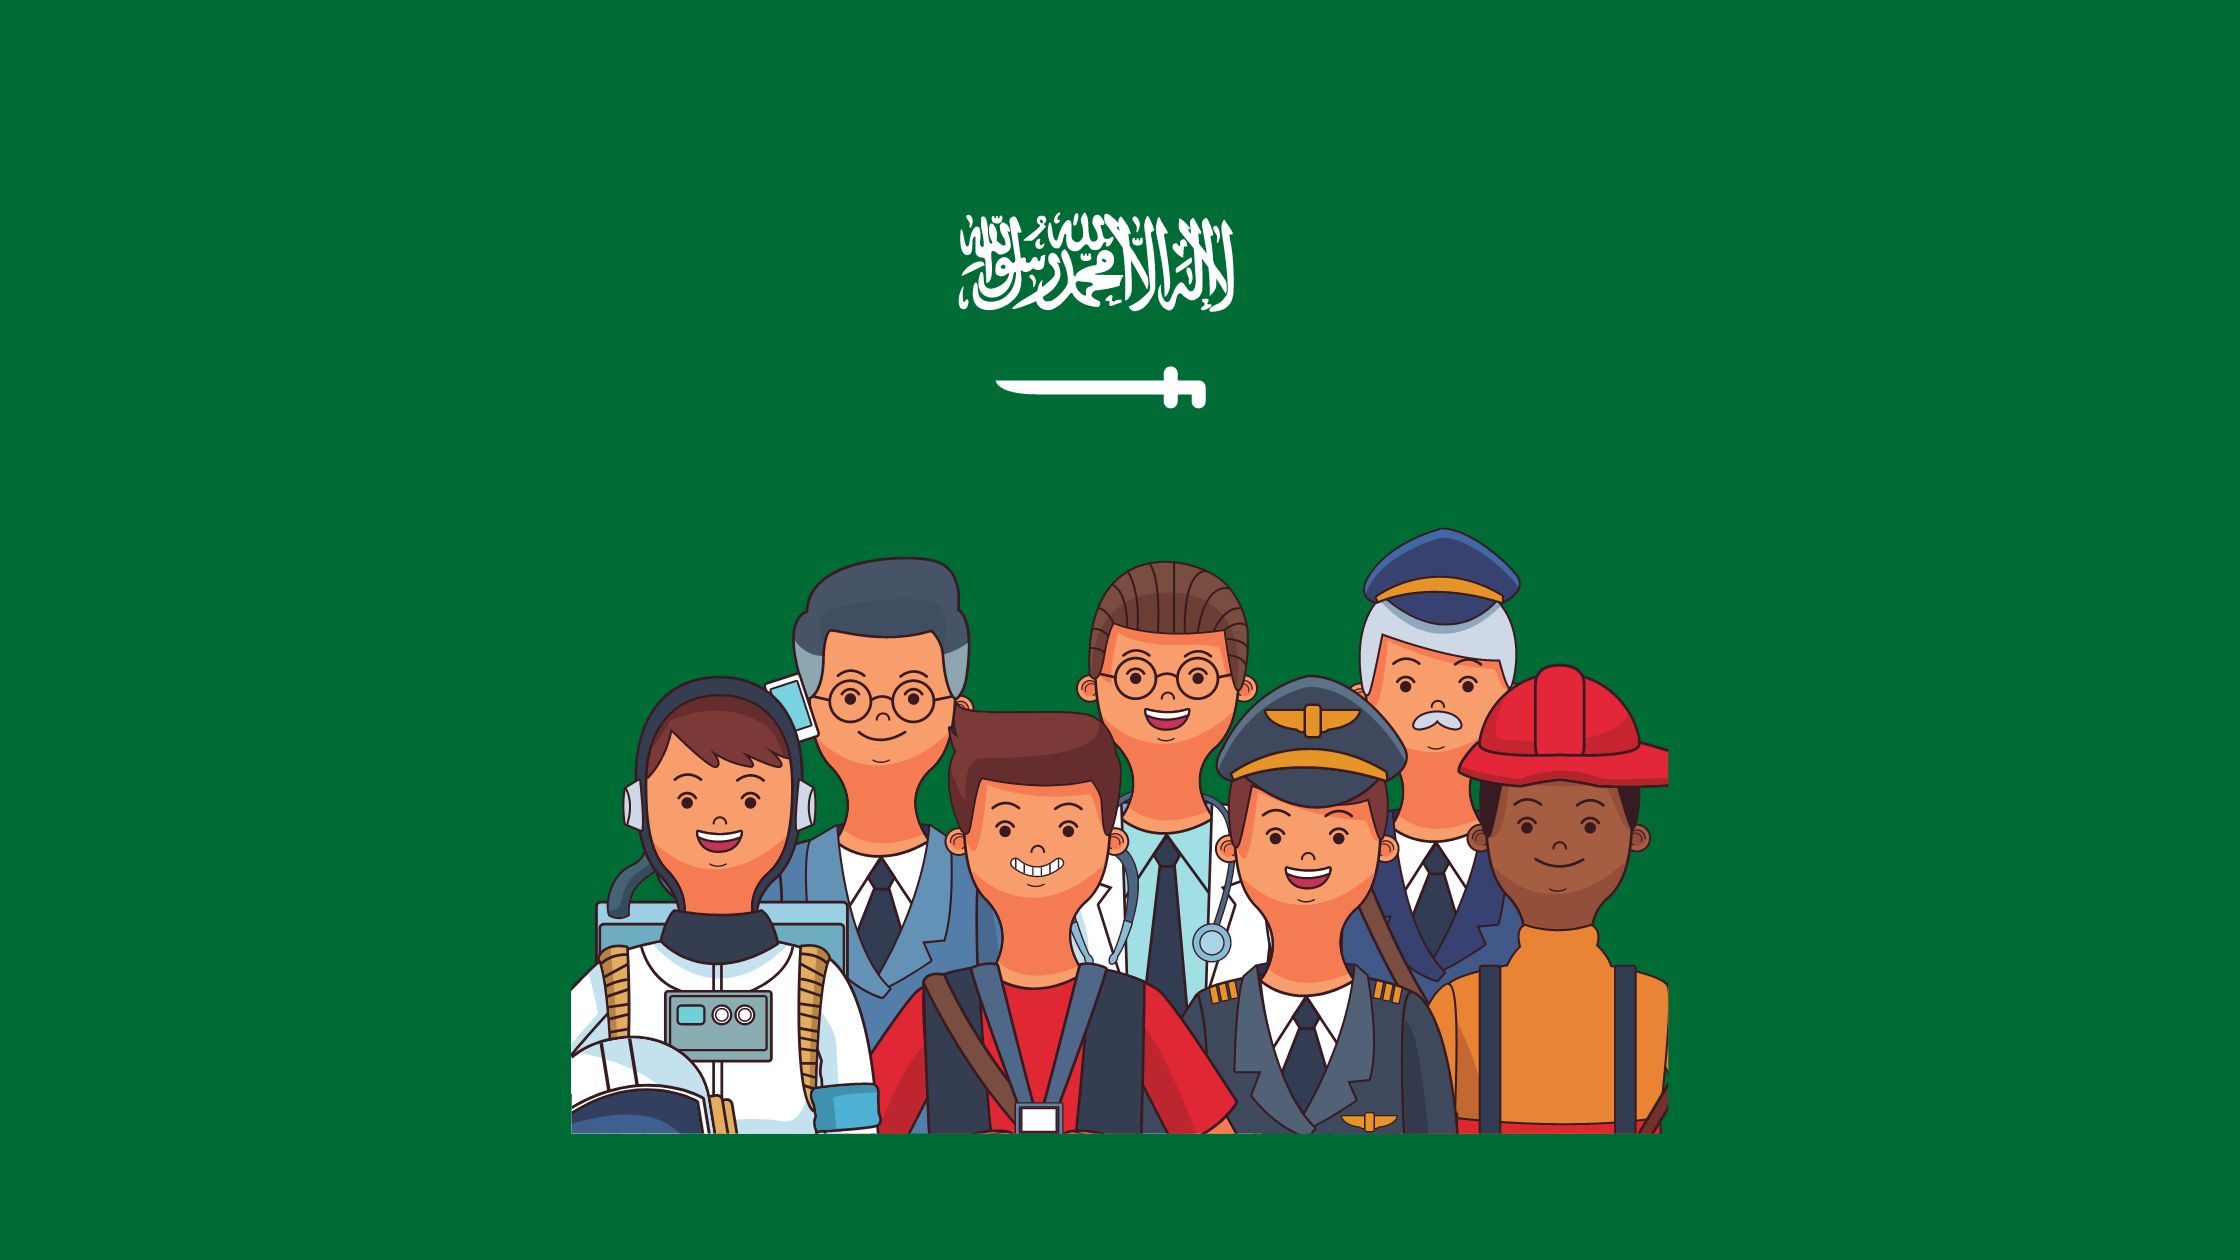 الوظائف الأعلى أجرًا في المملكة العربية السعودية 2022